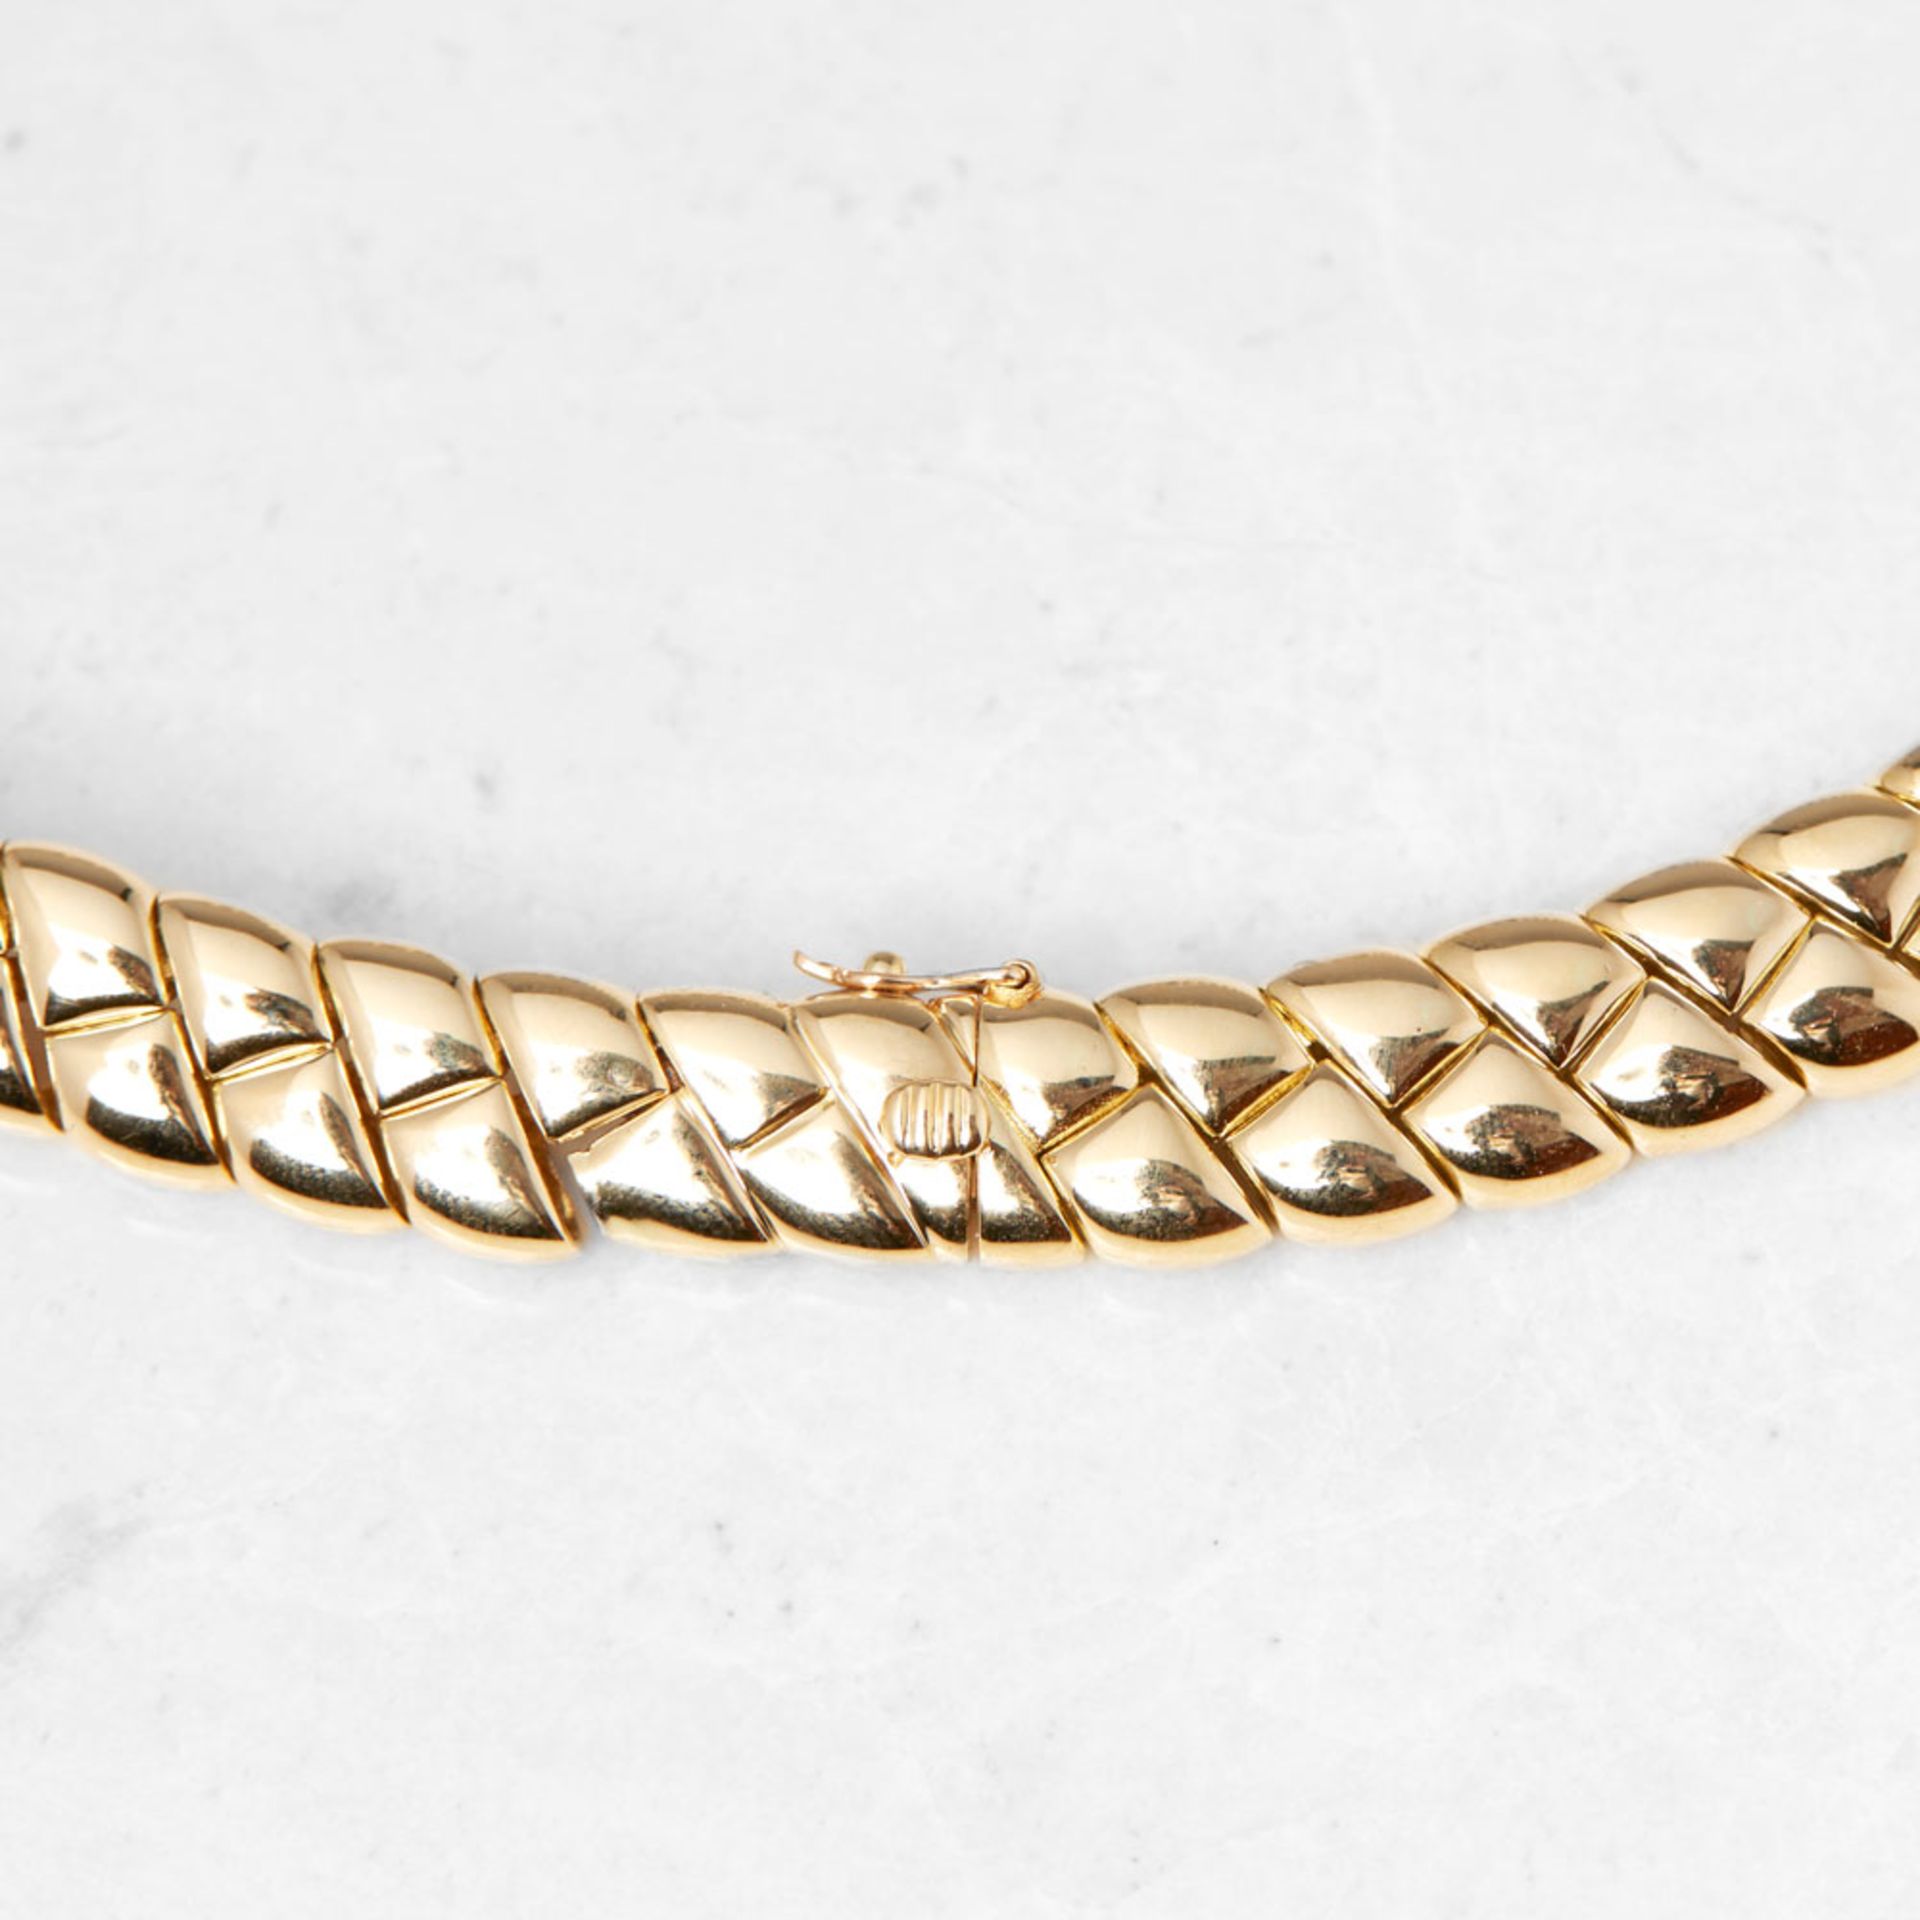 Van Cleef & Arpels 18k Yellow Gold Diamond Link Necklace - Image 3 of 5